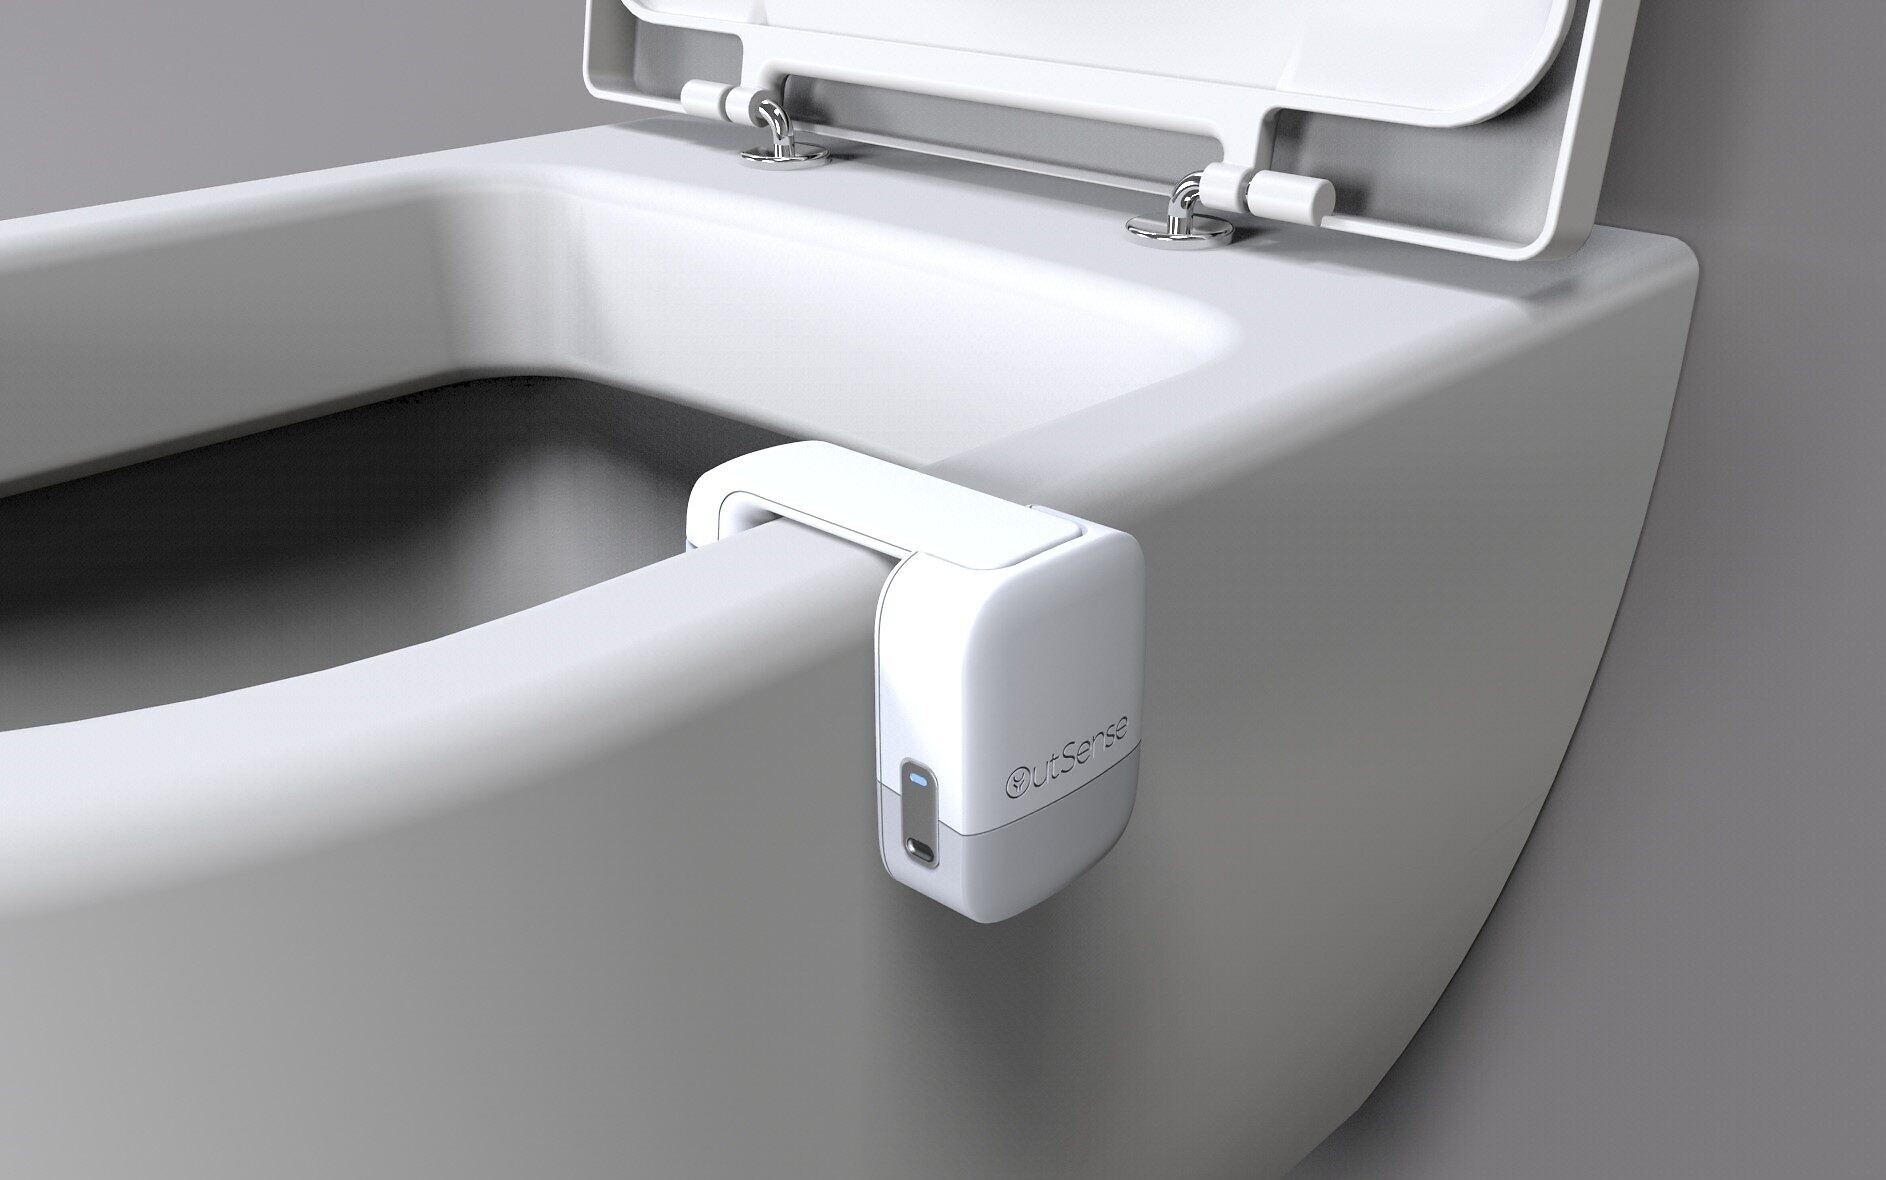 Les toilettes intelligentes vont-elles bientôt débarquer chez nous ?